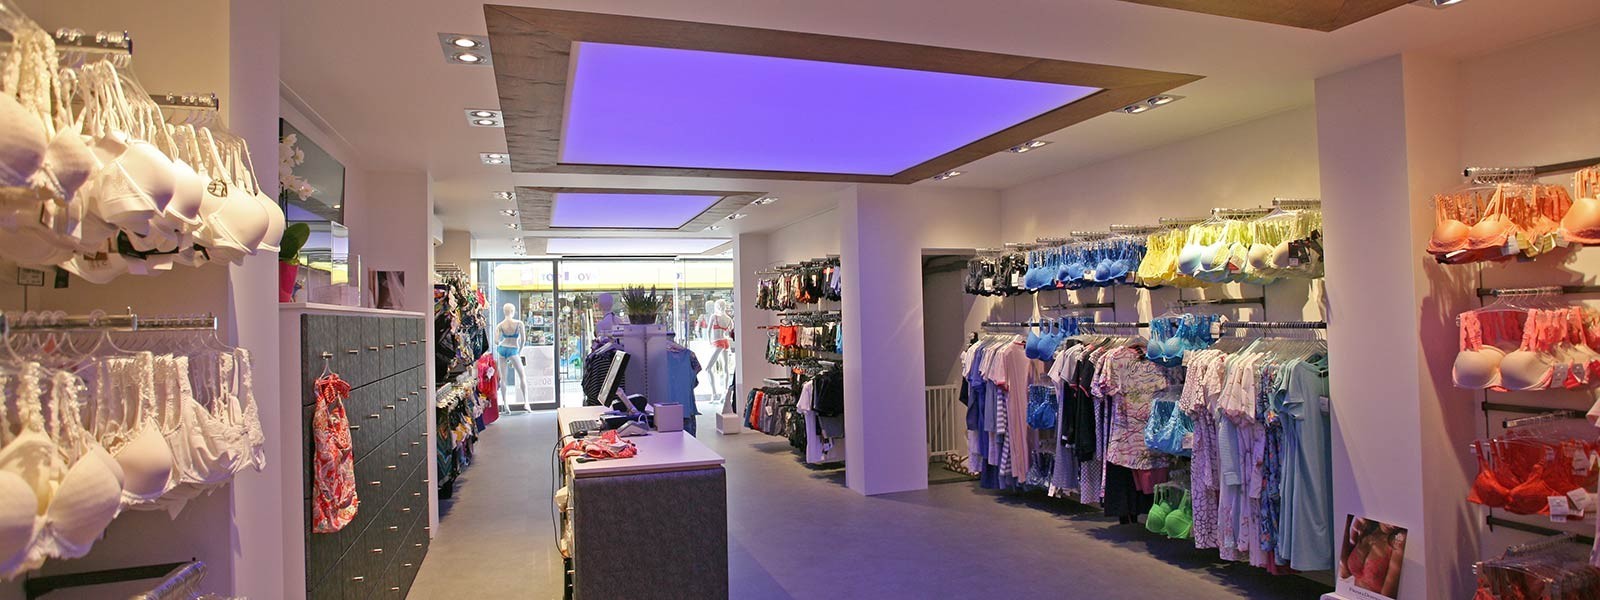 persoon voelen uitrusting Lichtplan maken voor een winkel (Hulp bij verlichting van SLV Nederland)